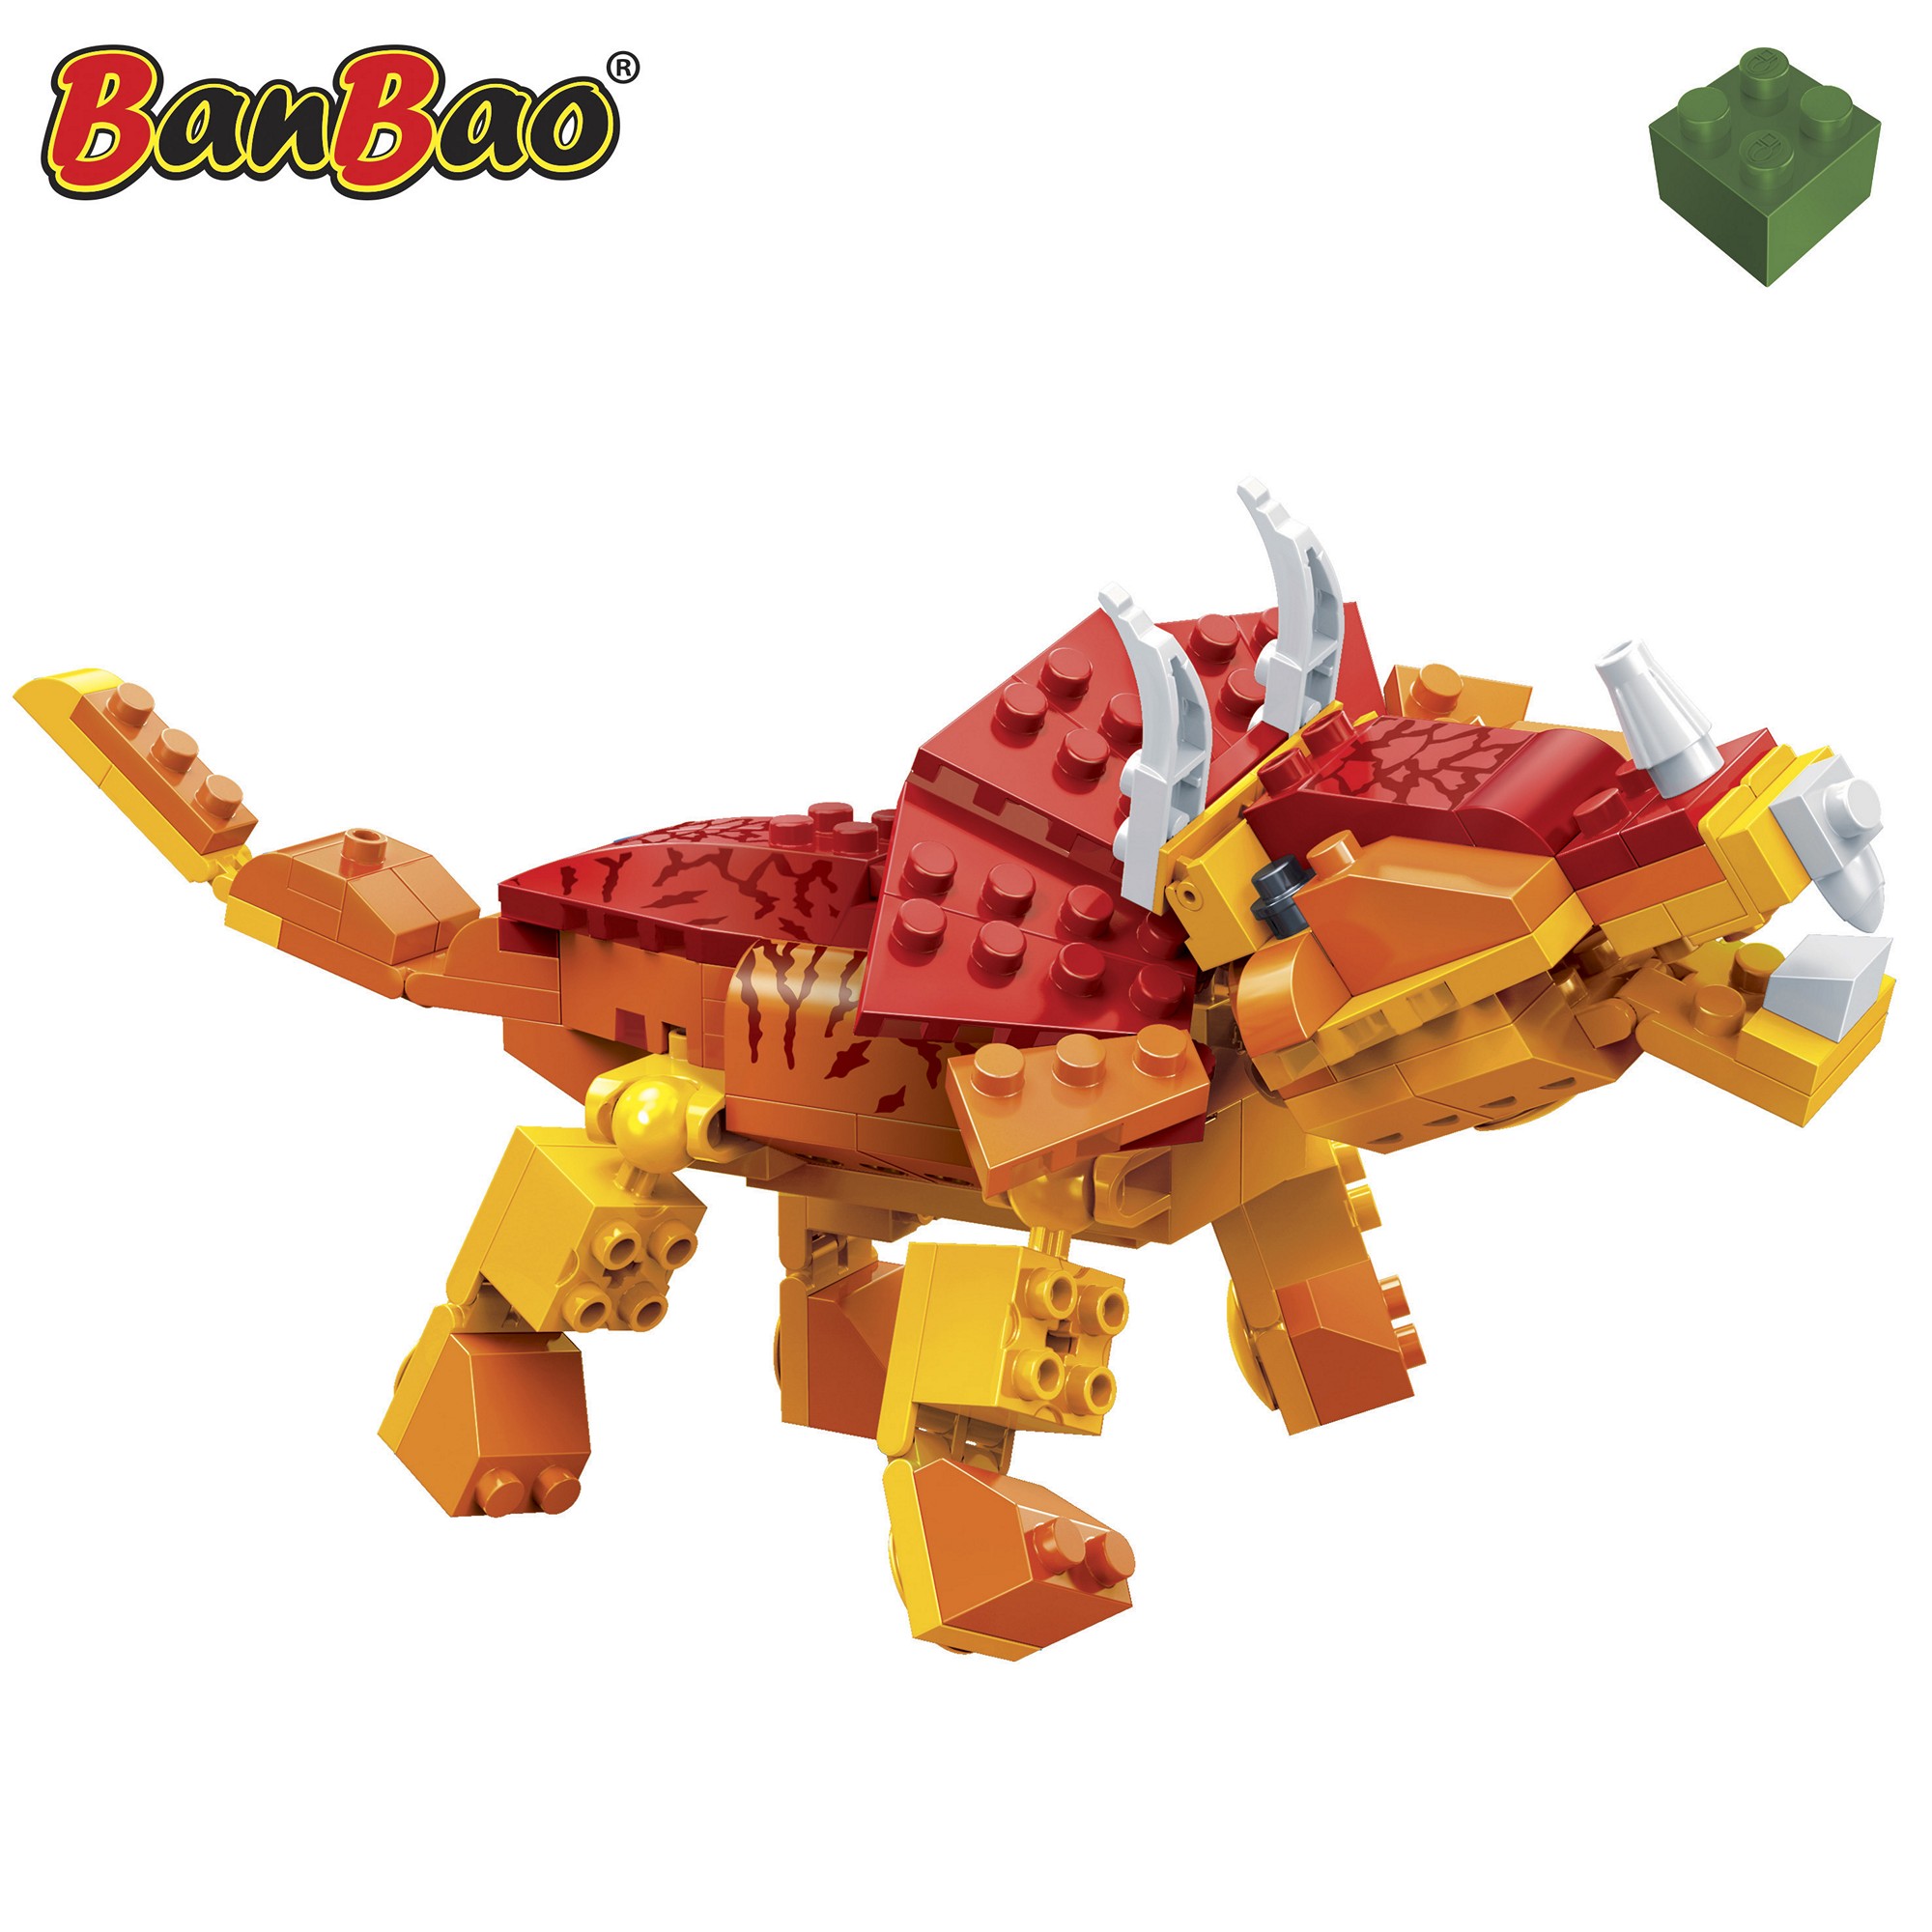 Kinder Geschenk Konstruktions Spielzeug Bausteine Baukästen Triceratops Dinosaurier Banbao 6862